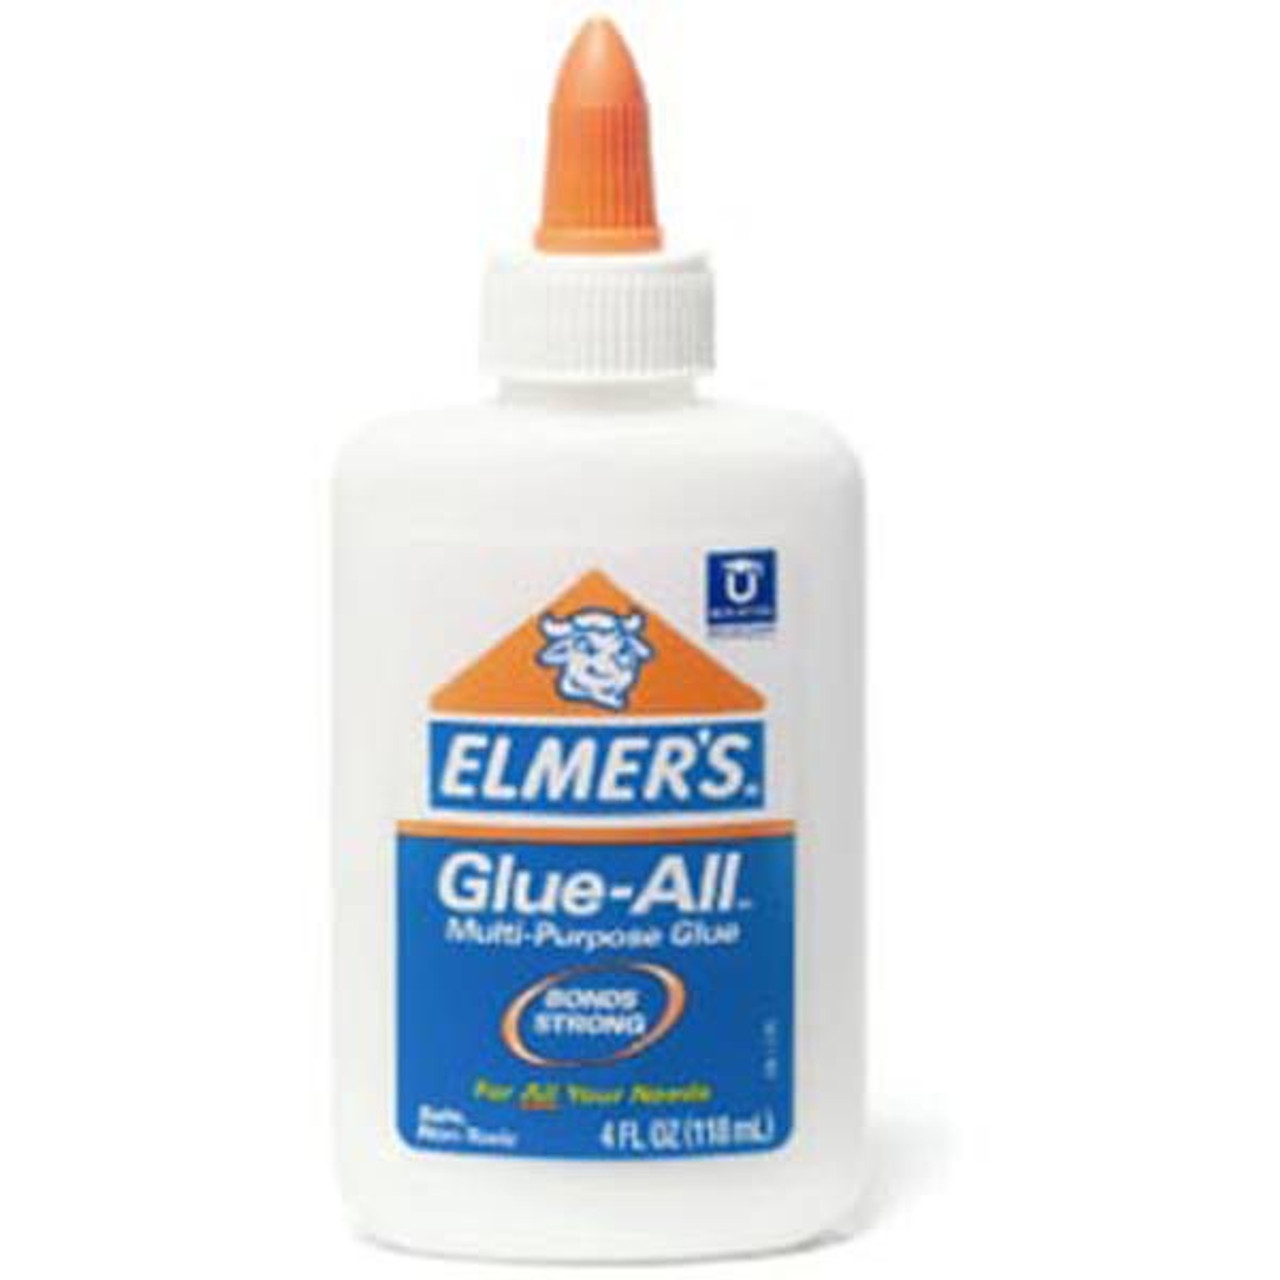 Elmer's All Multipurpose White Glue, 4 oz